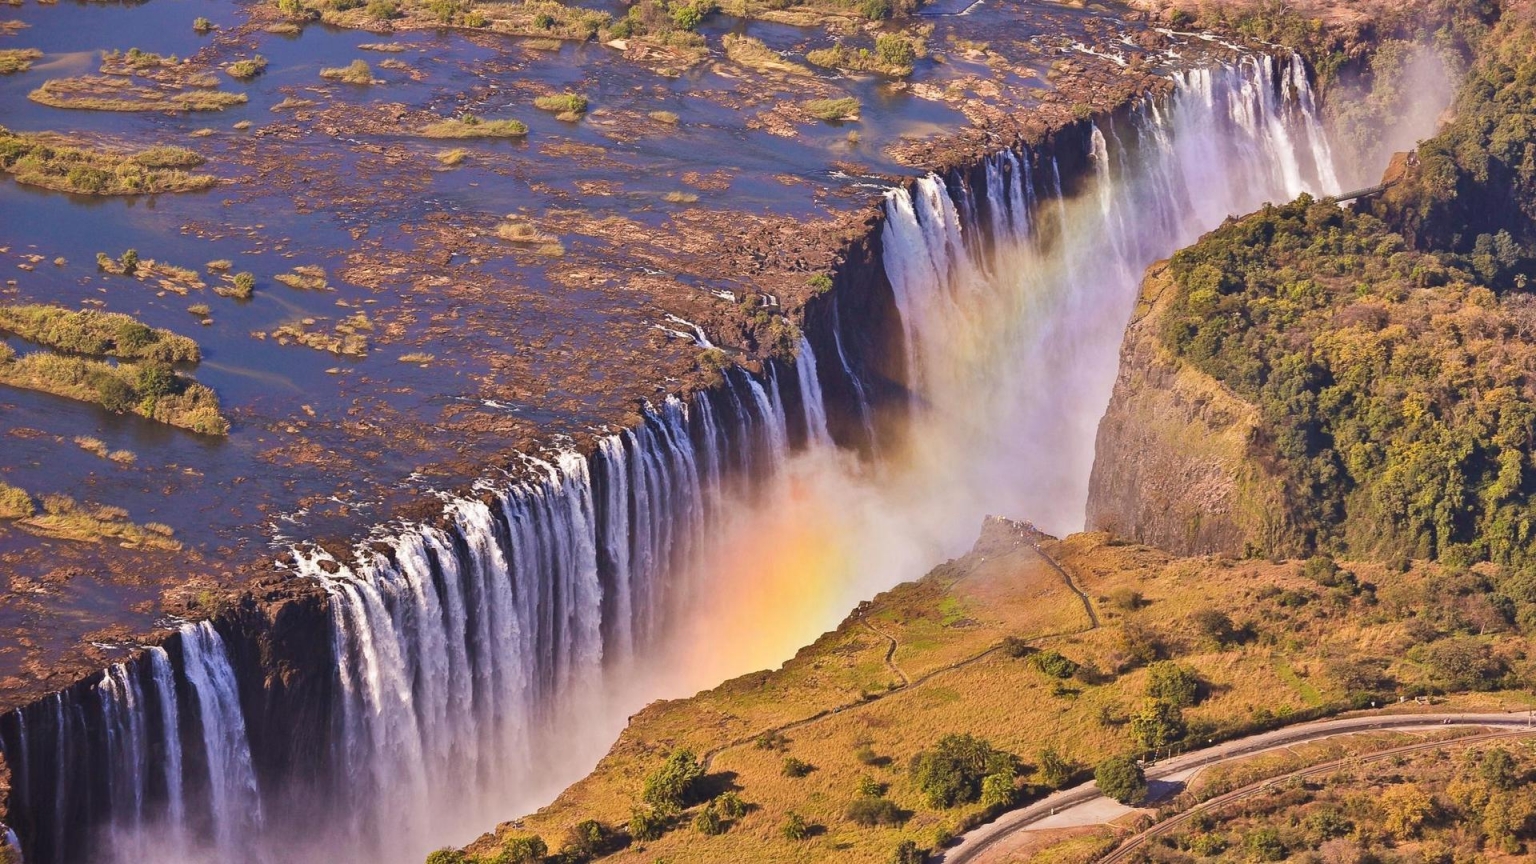 Victoria Falls Zambia for 1536 x 864 HDTV resolution